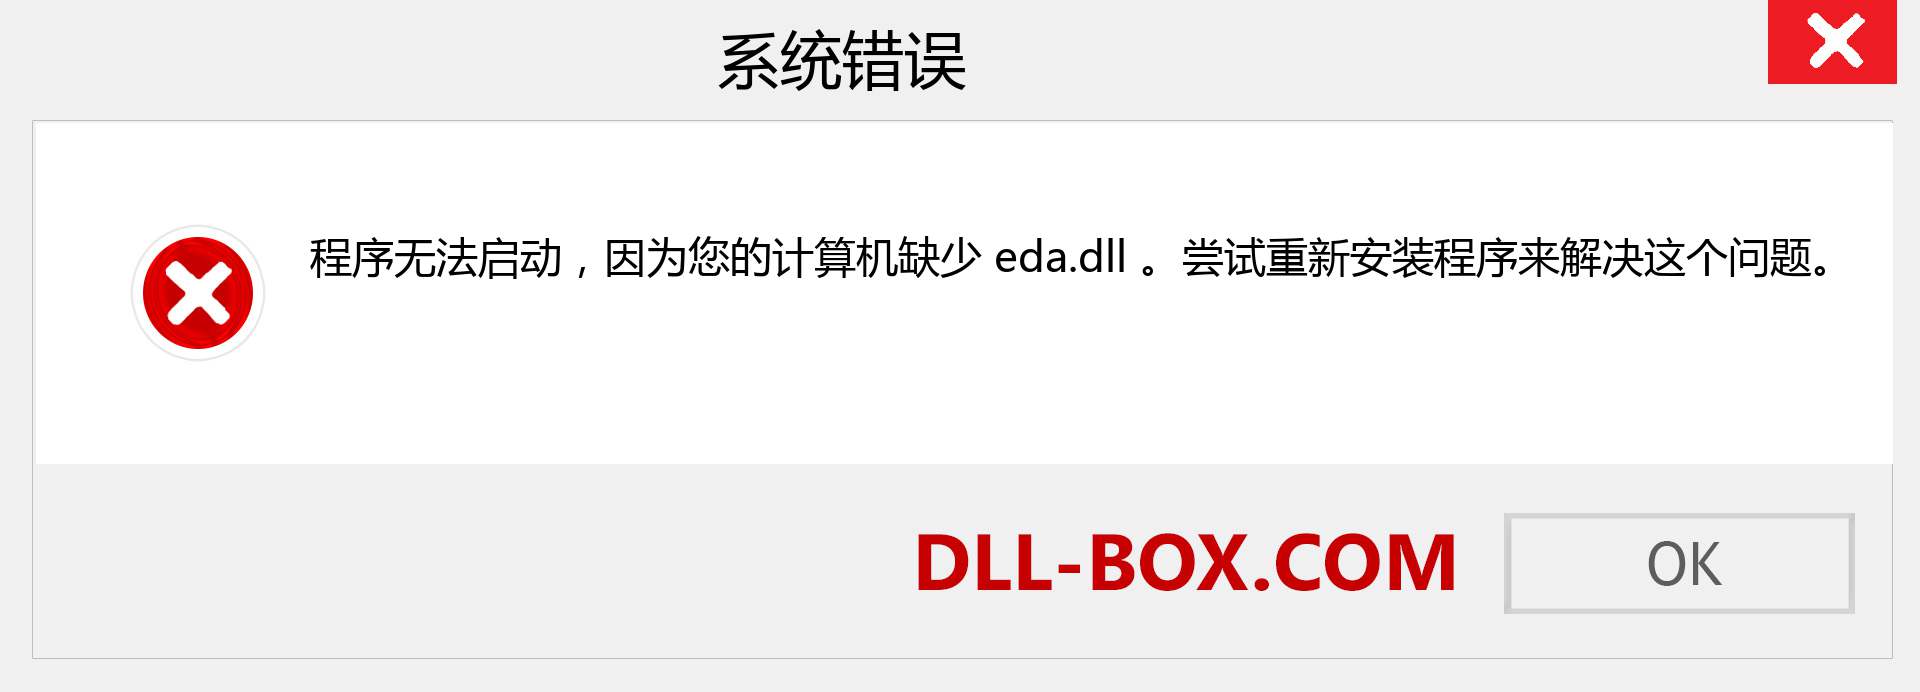 eda.dll 文件丢失？。 适用于 Windows 7、8、10 的下载 - 修复 Windows、照片、图像上的 eda dll 丢失错误